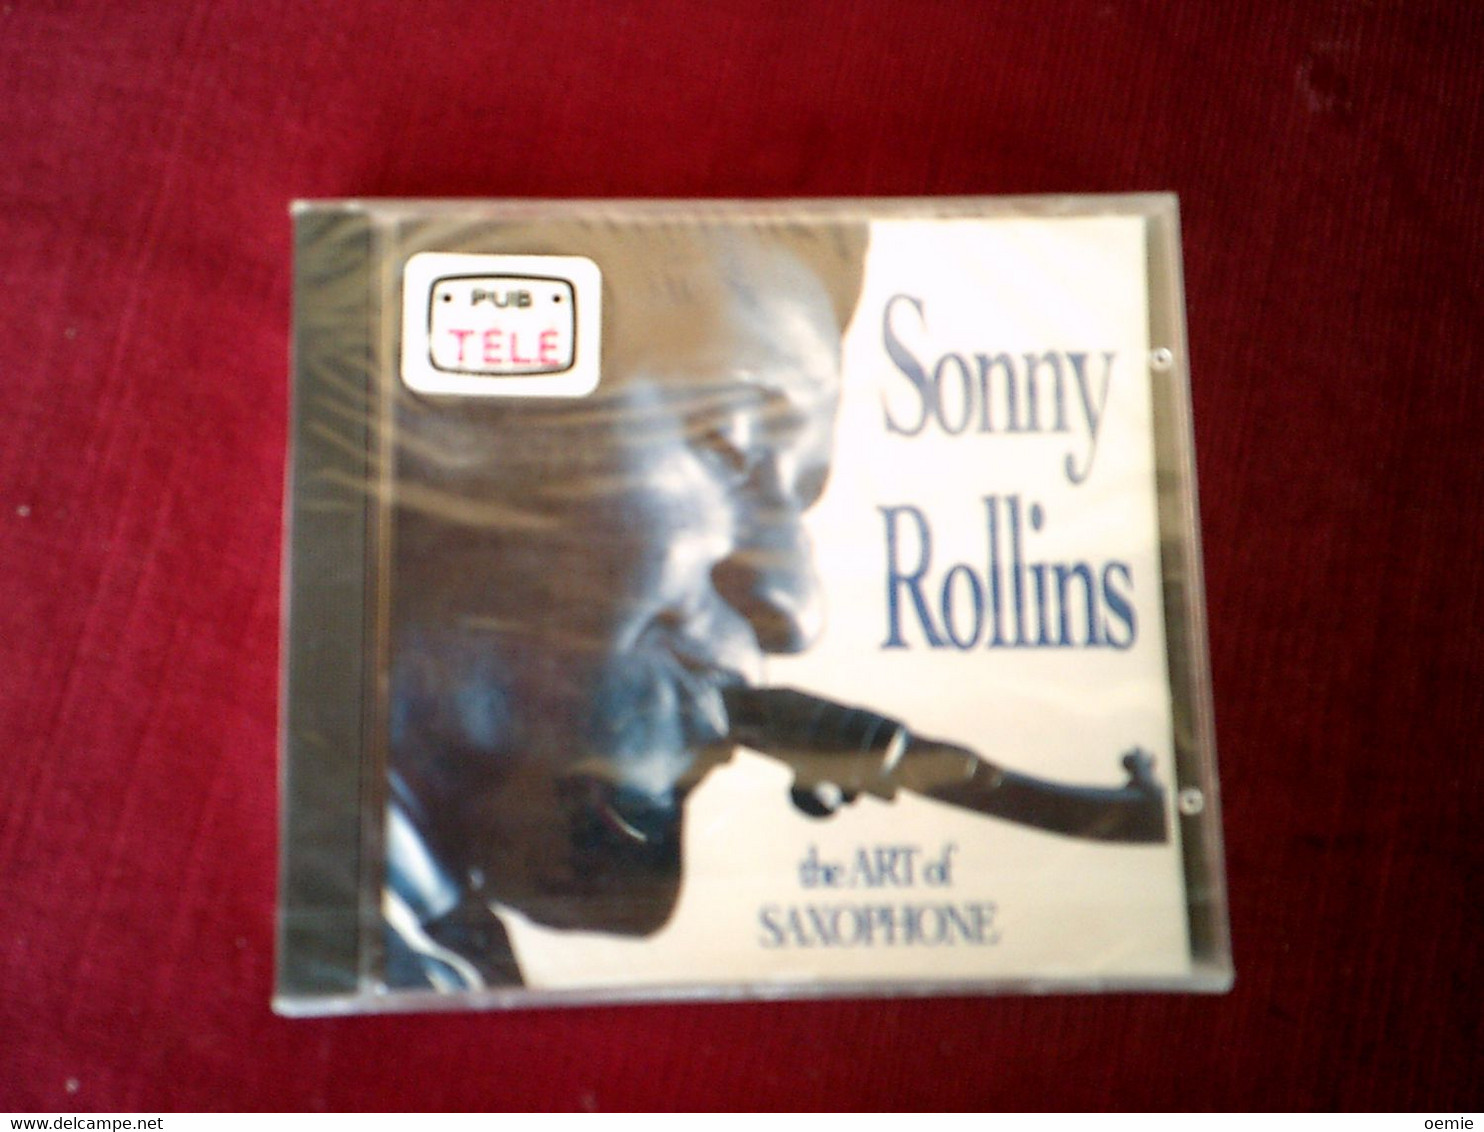 COLLECTION DE 4 CD ALBUM DE JAZZ ° SONNY ROLLINS + MARCUS ROBERTS + ROBERT NIGHTHWK + SAM COOKE - Colecciones Completas